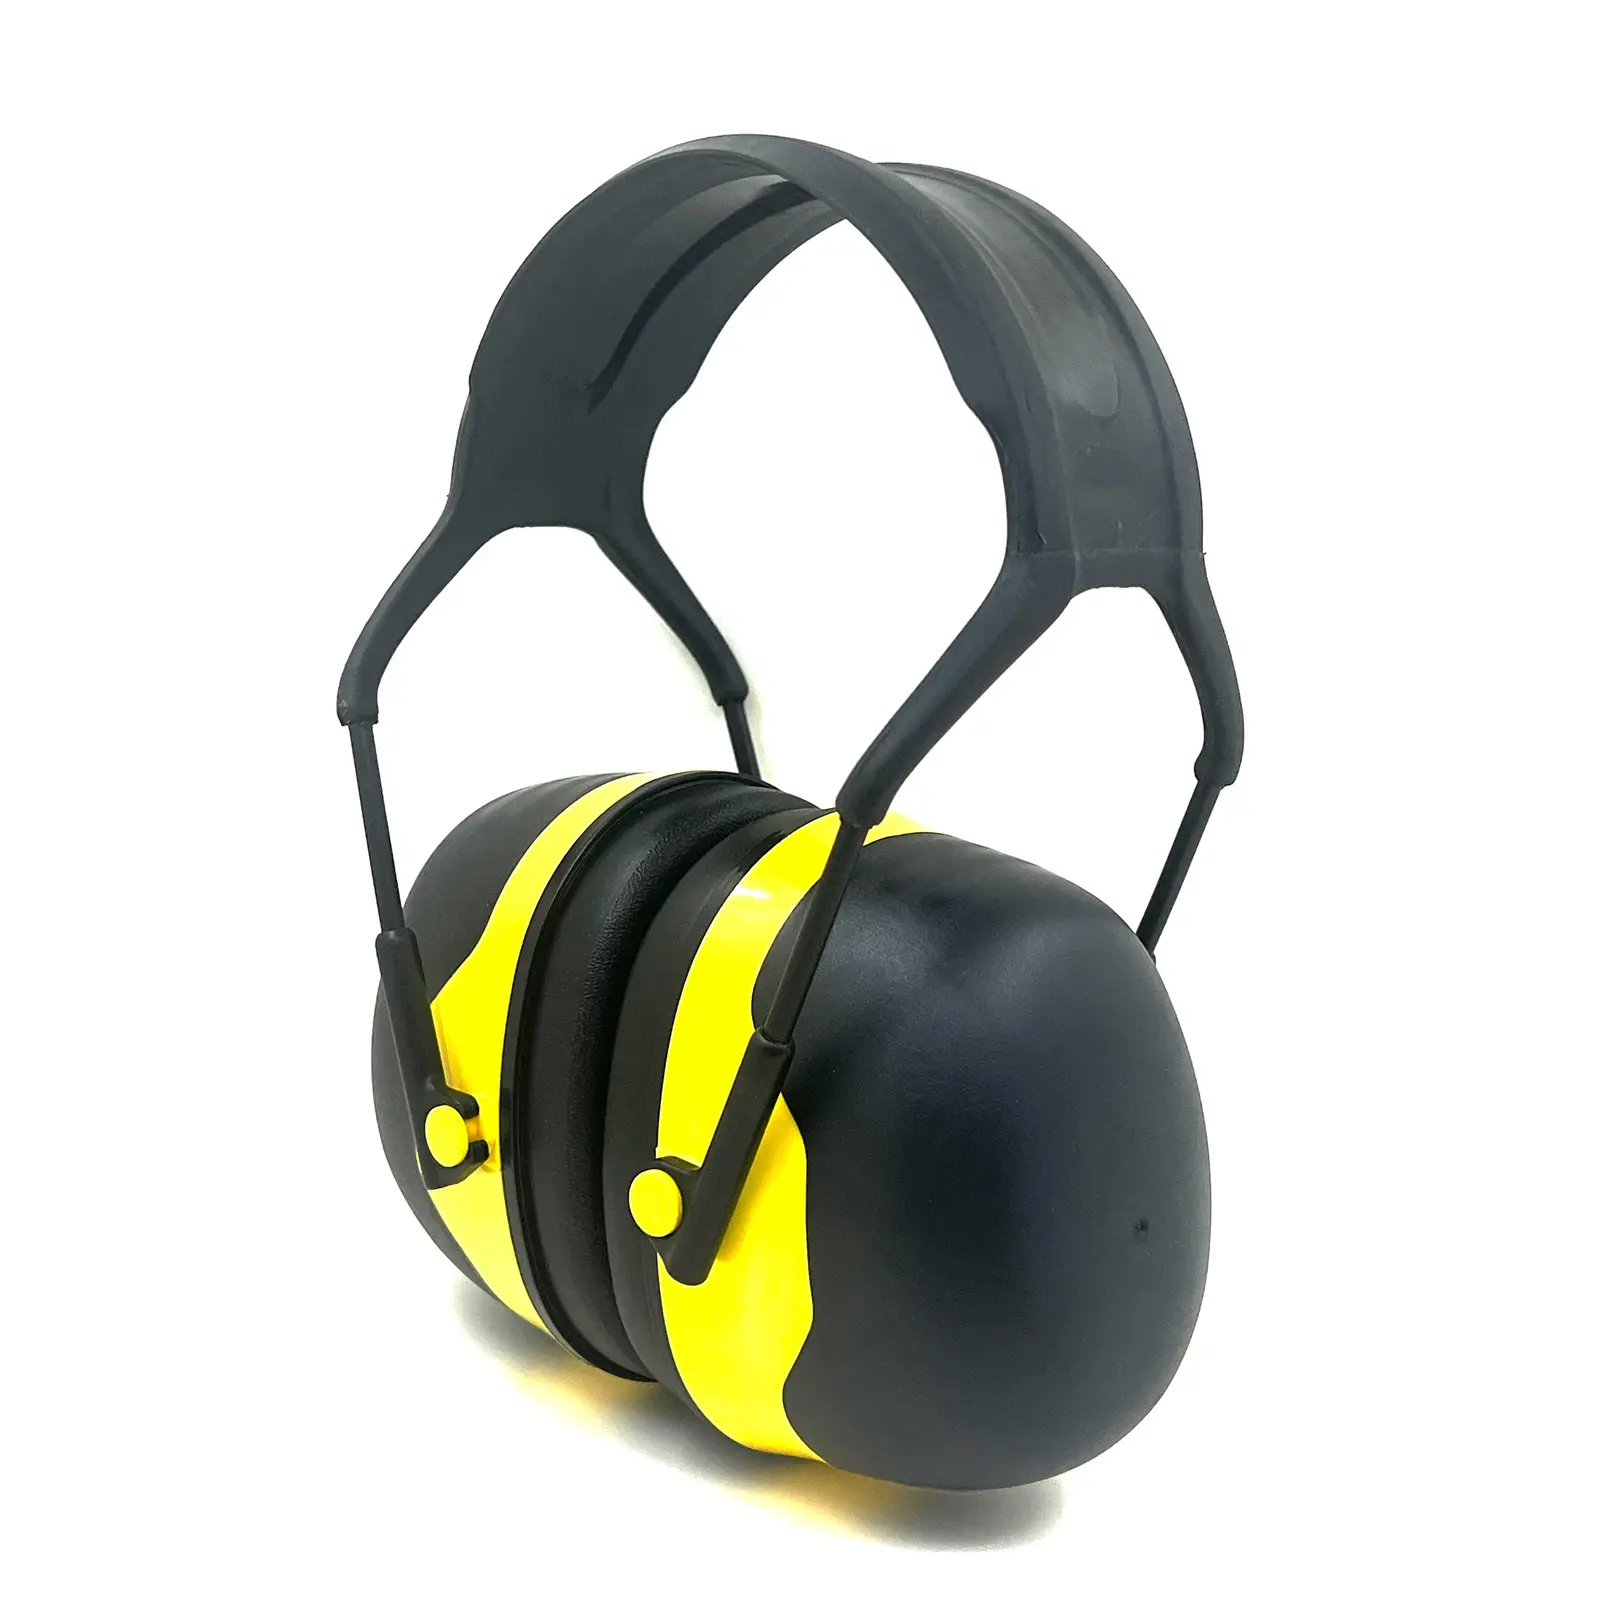 OEM GS13 ที่ปิดหู 35dB ลดเสียงรบกวนความปลอดภัยการป้องกันการได้ยินอุปกรณ์ป้องกันส่วนบุคคล